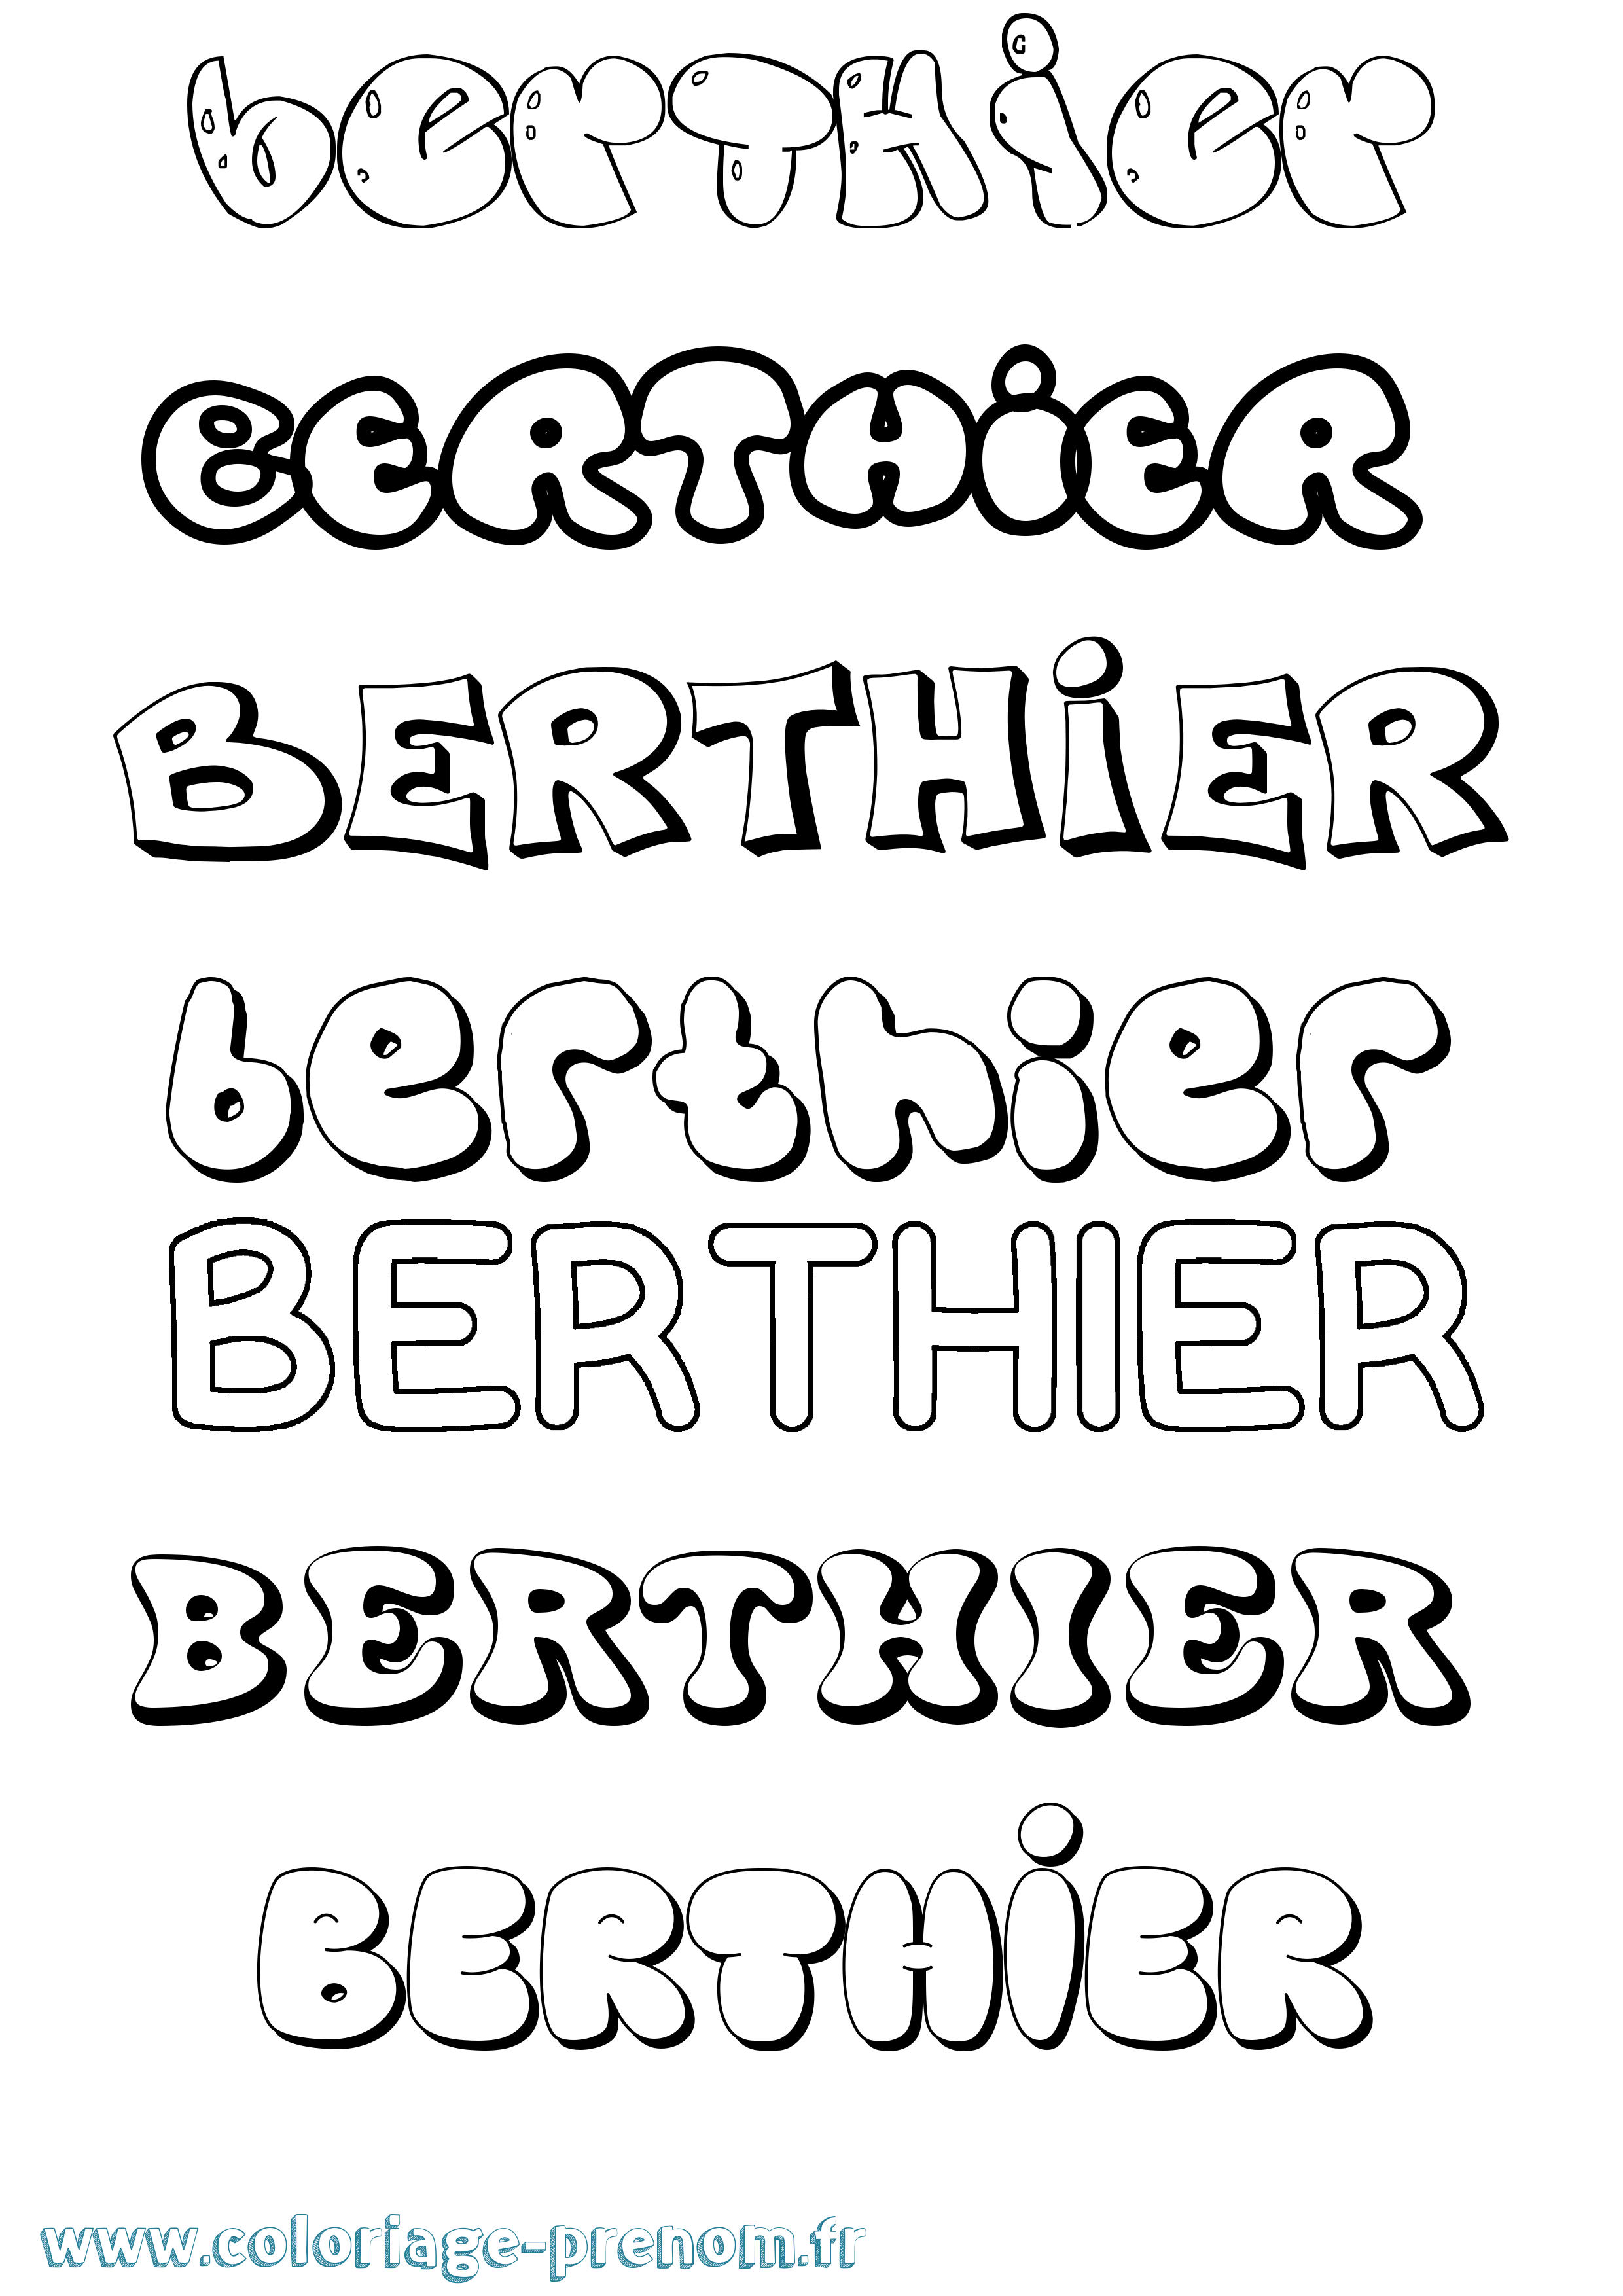 Coloriage prénom Berthier Bubble